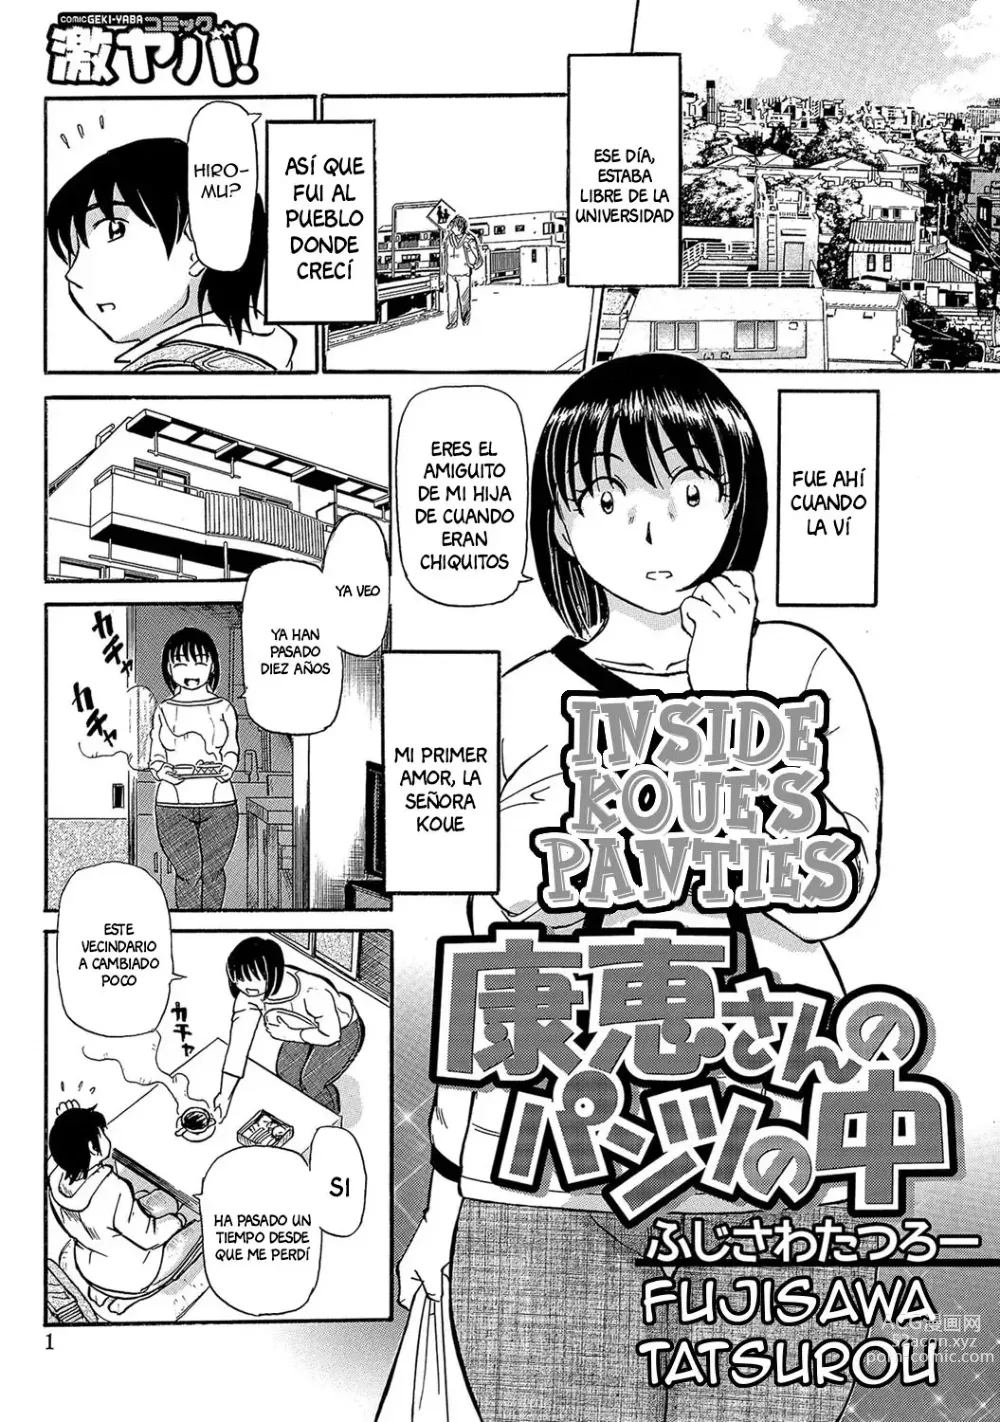 Page 1 of manga Inside Koue's Panties